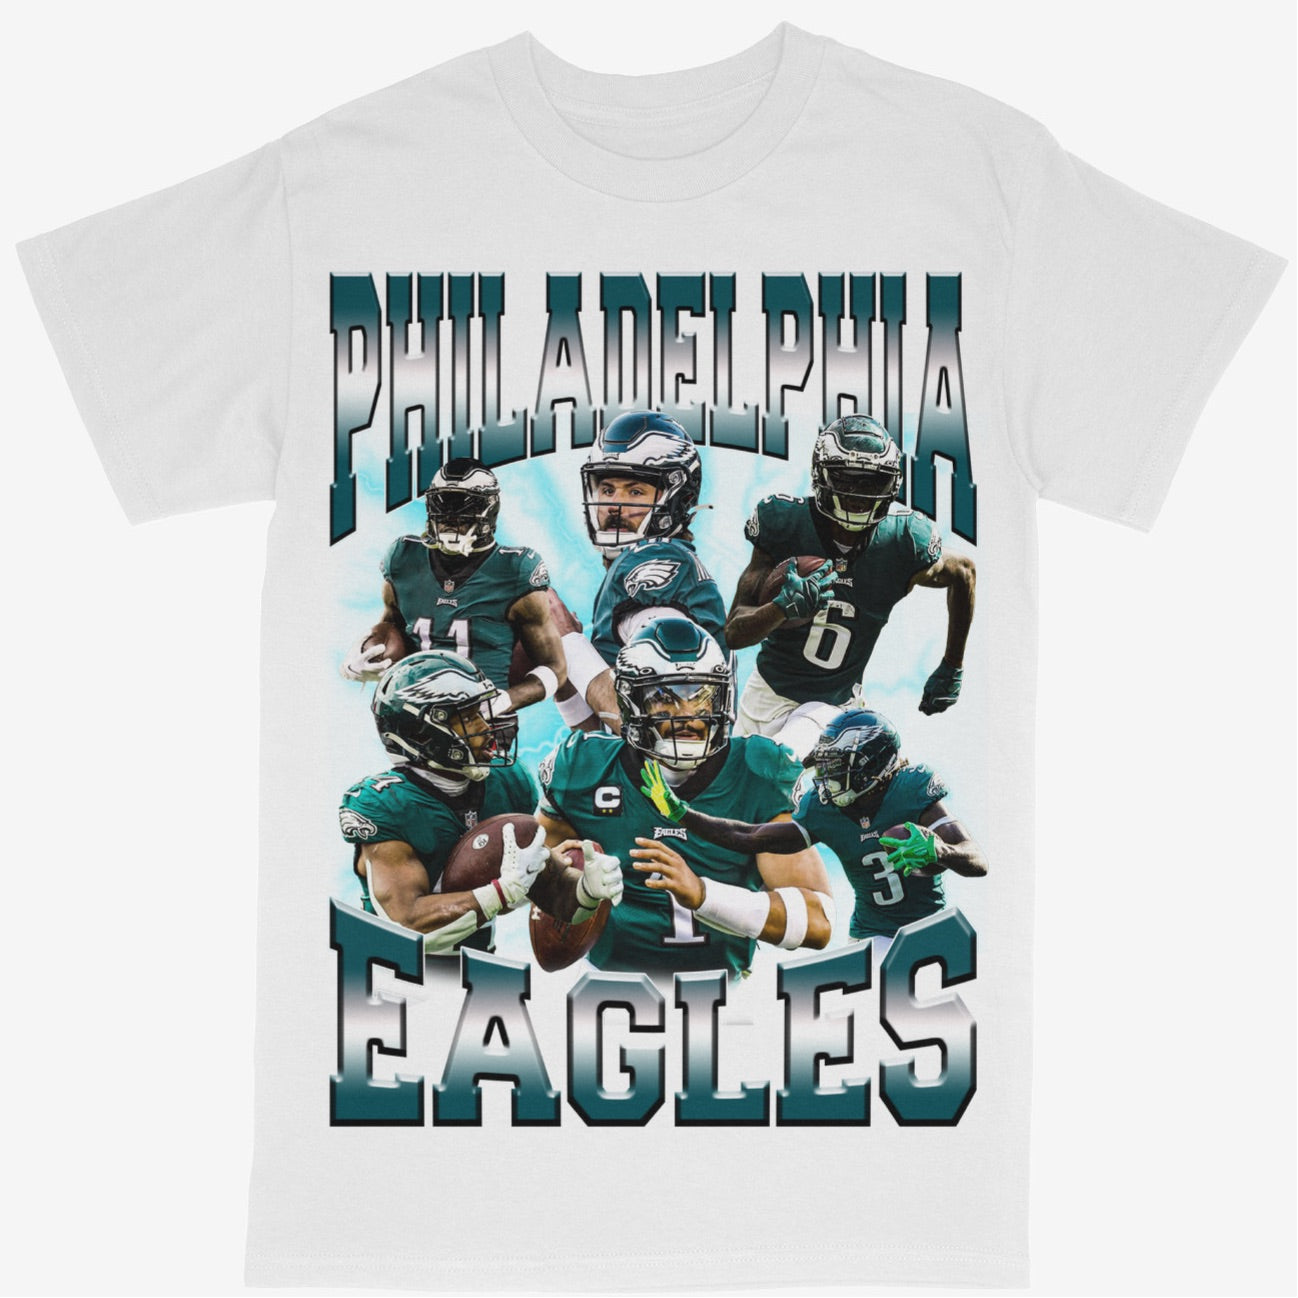 Philadelphia Eagles Tee Shirt NFL Football